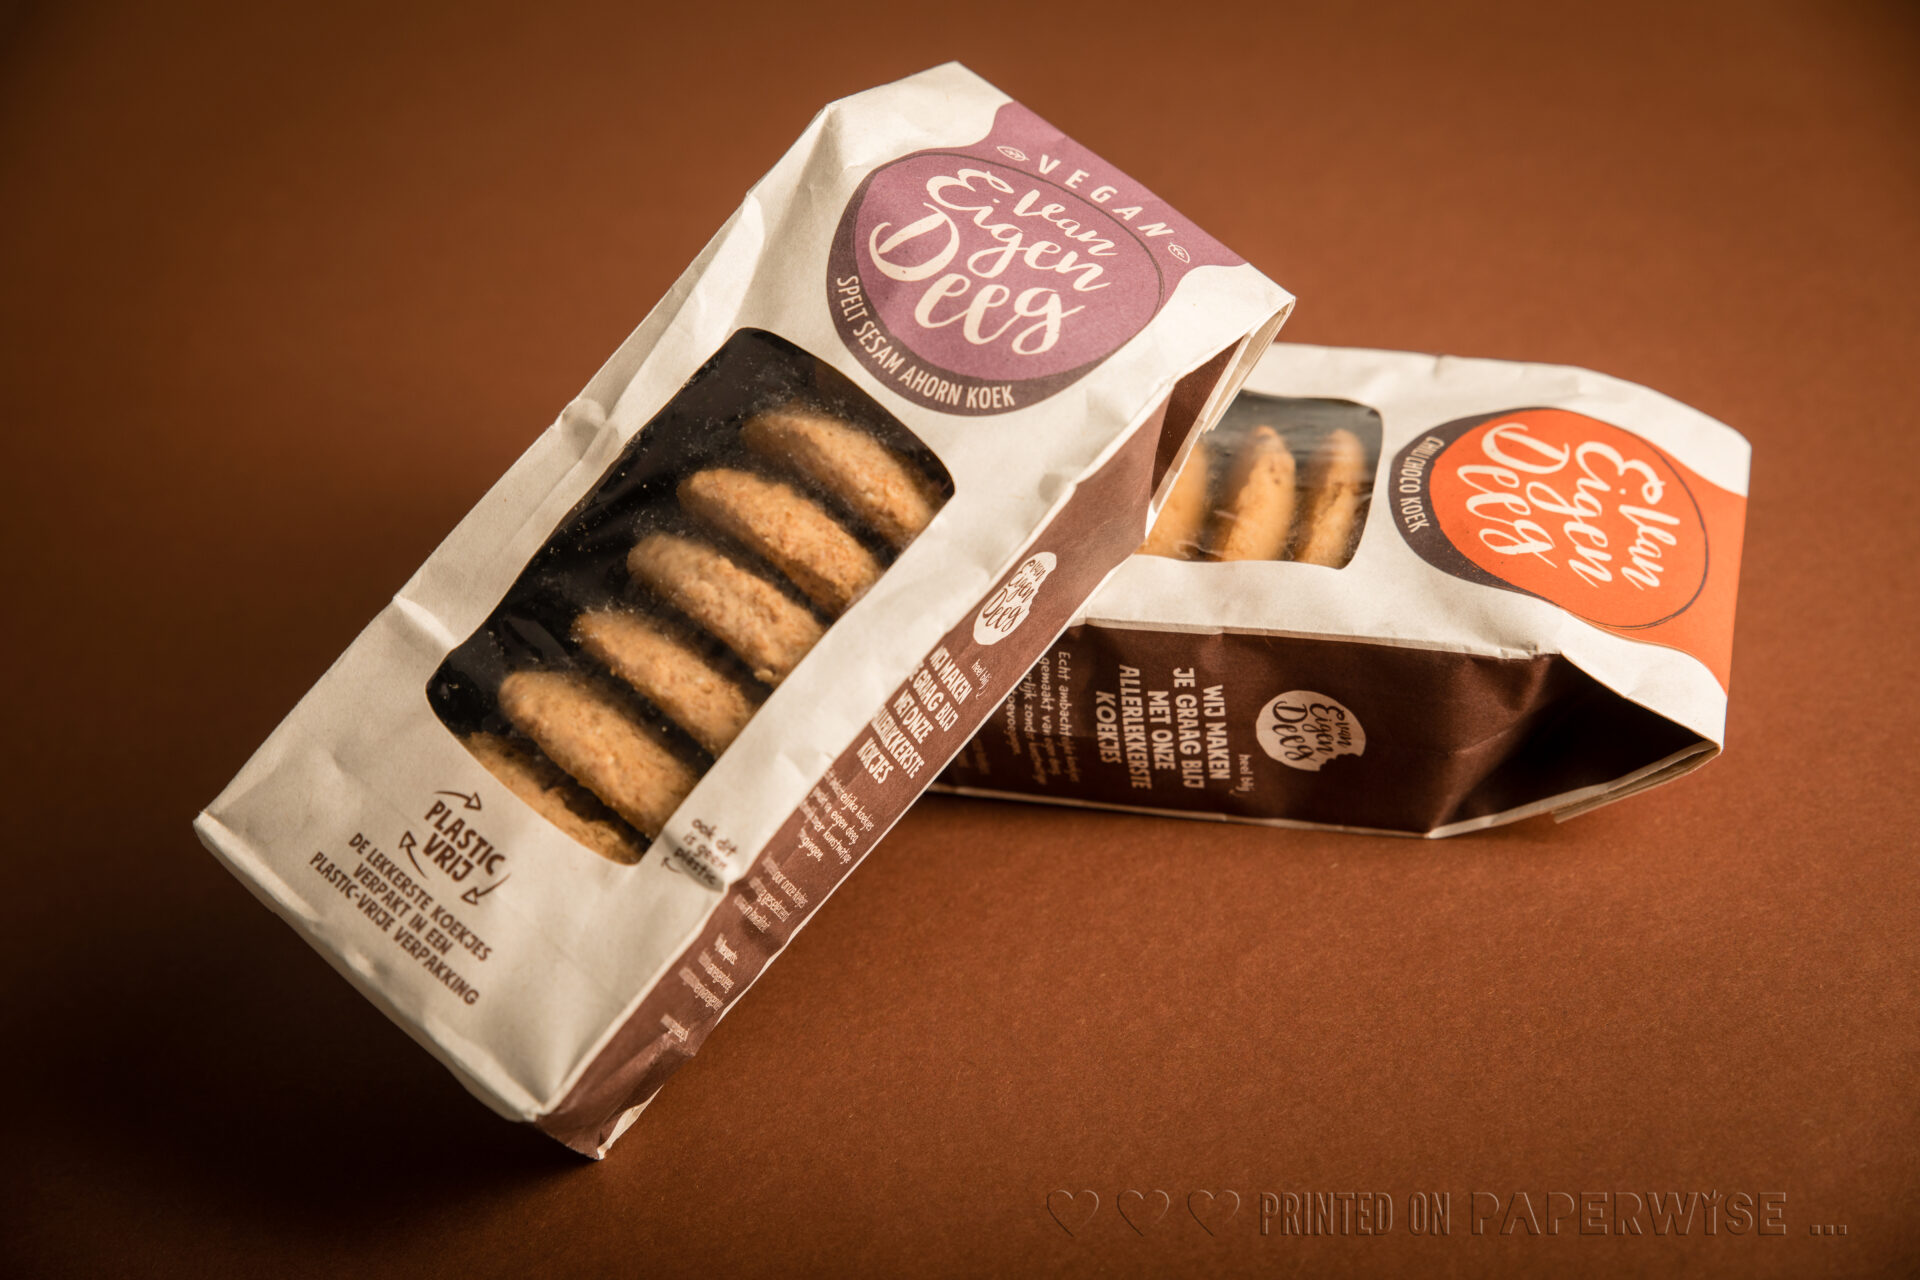 wp content uploads  0   0   natural paper greaseproof food packaging cookies compostable van eigen deeg